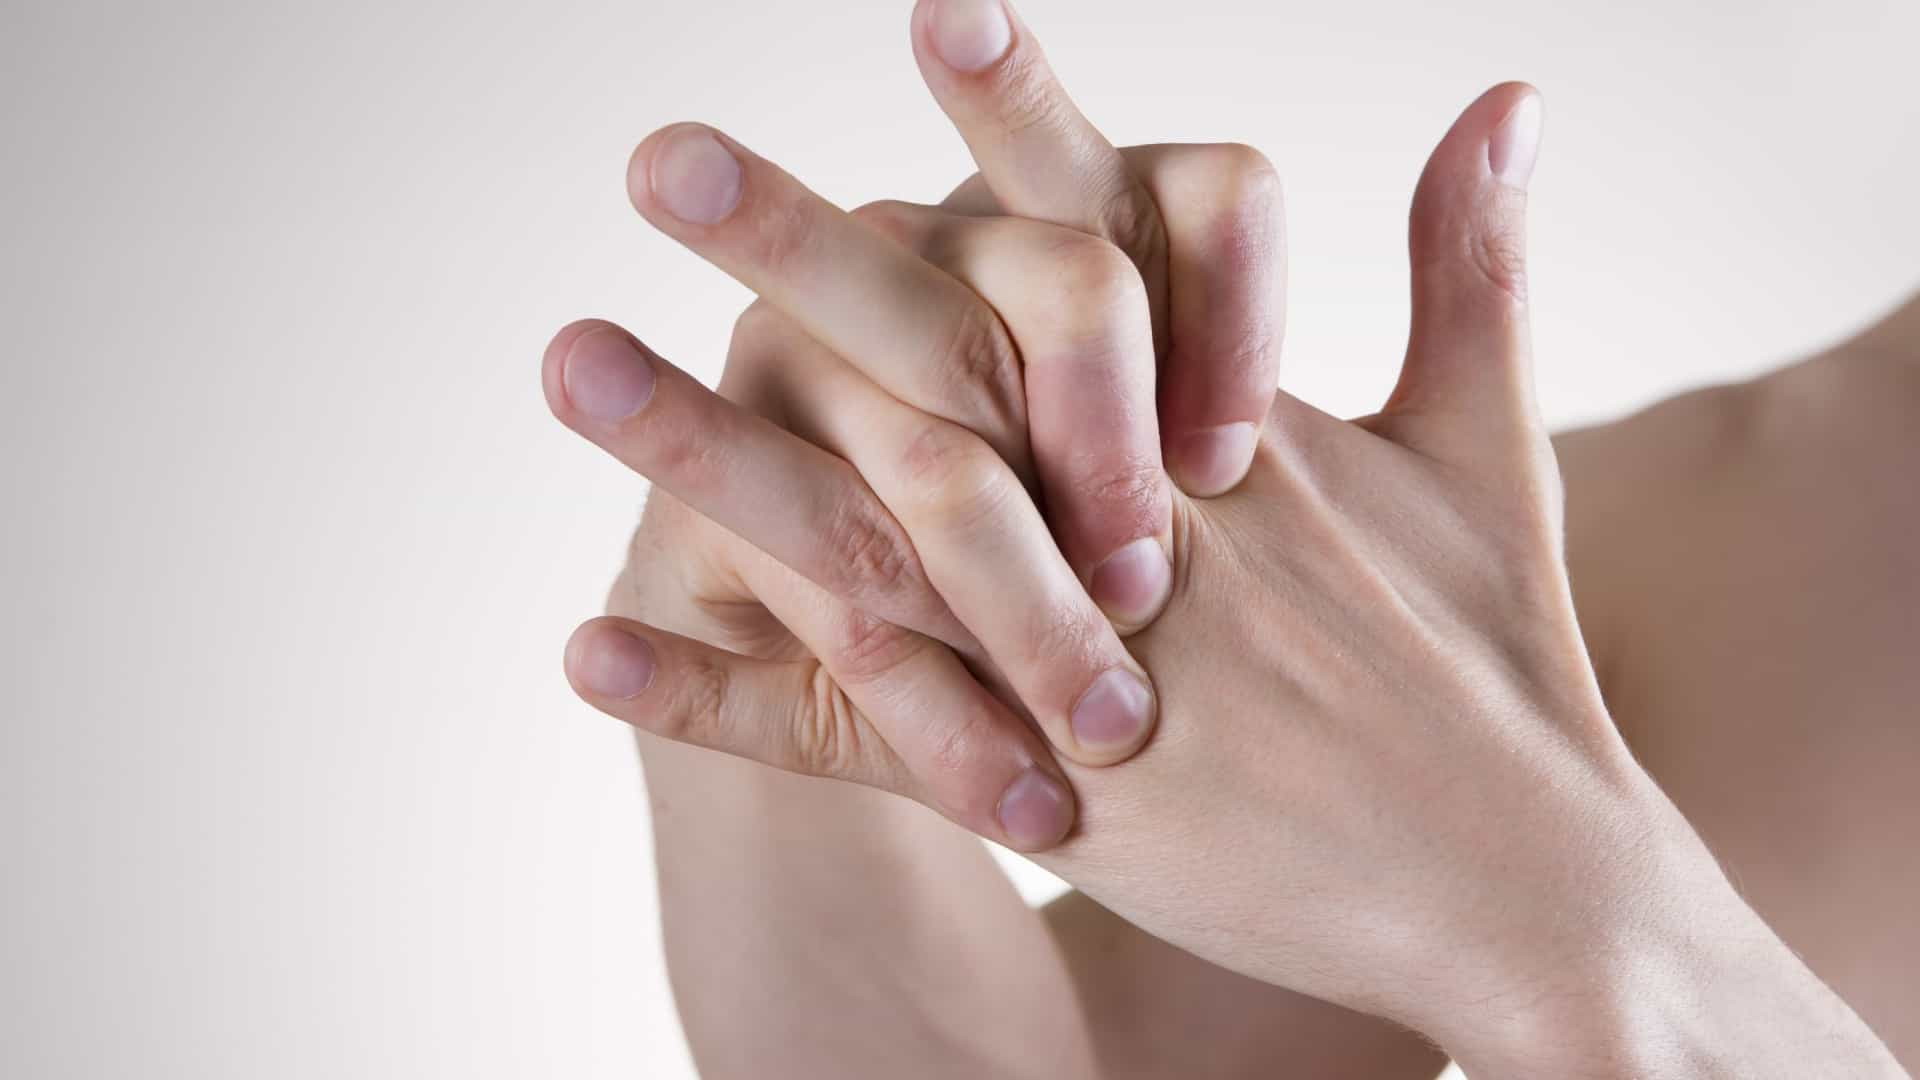 Estalar os dedos faz mal às articulações e ossos? Toda a verdade